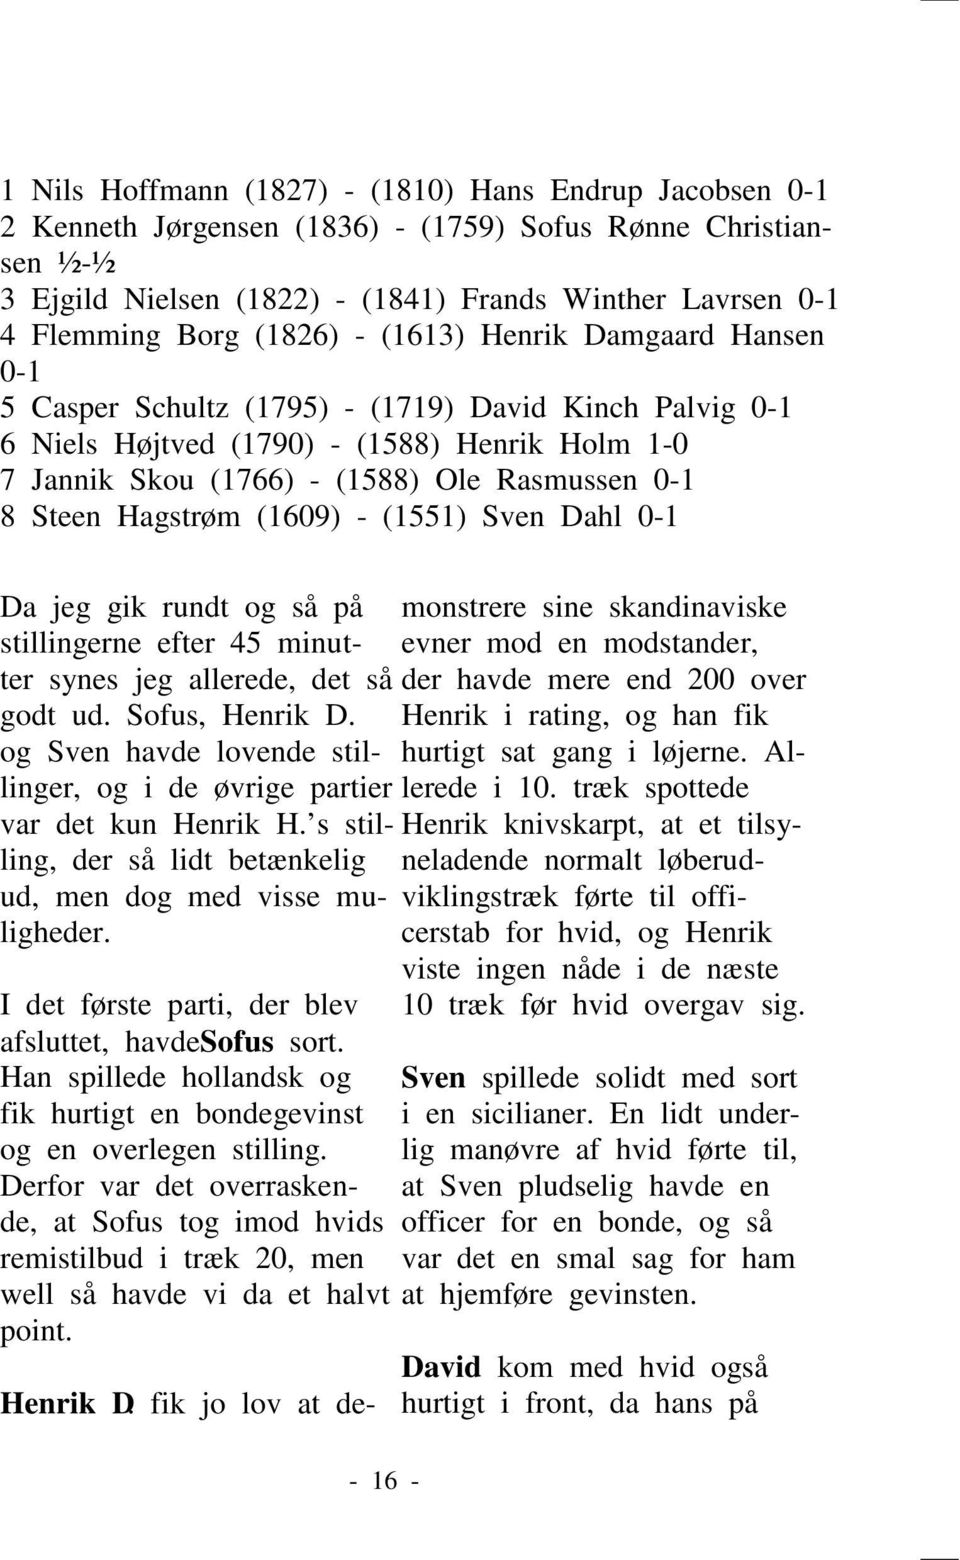 Steen Hagstrøm (1609) - (1551) Sven Dahl 0-1 Da jeg gik rundt og så på stillingerne efter 45 minutter synes jeg allerede, det så godt ud. Sofus, Henrik D.